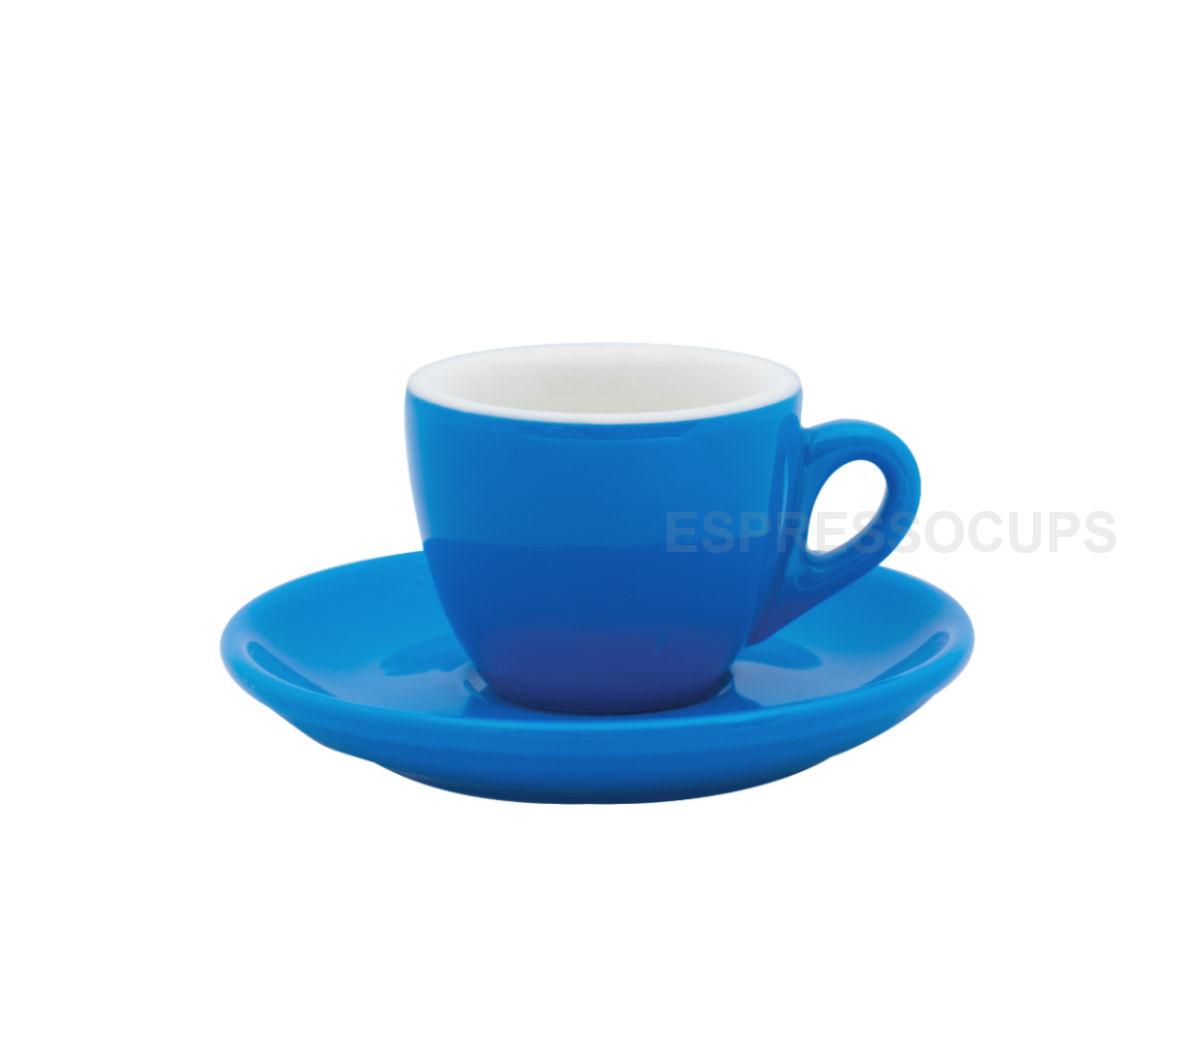 "ROSA" Espresso Cups 70ml - blue